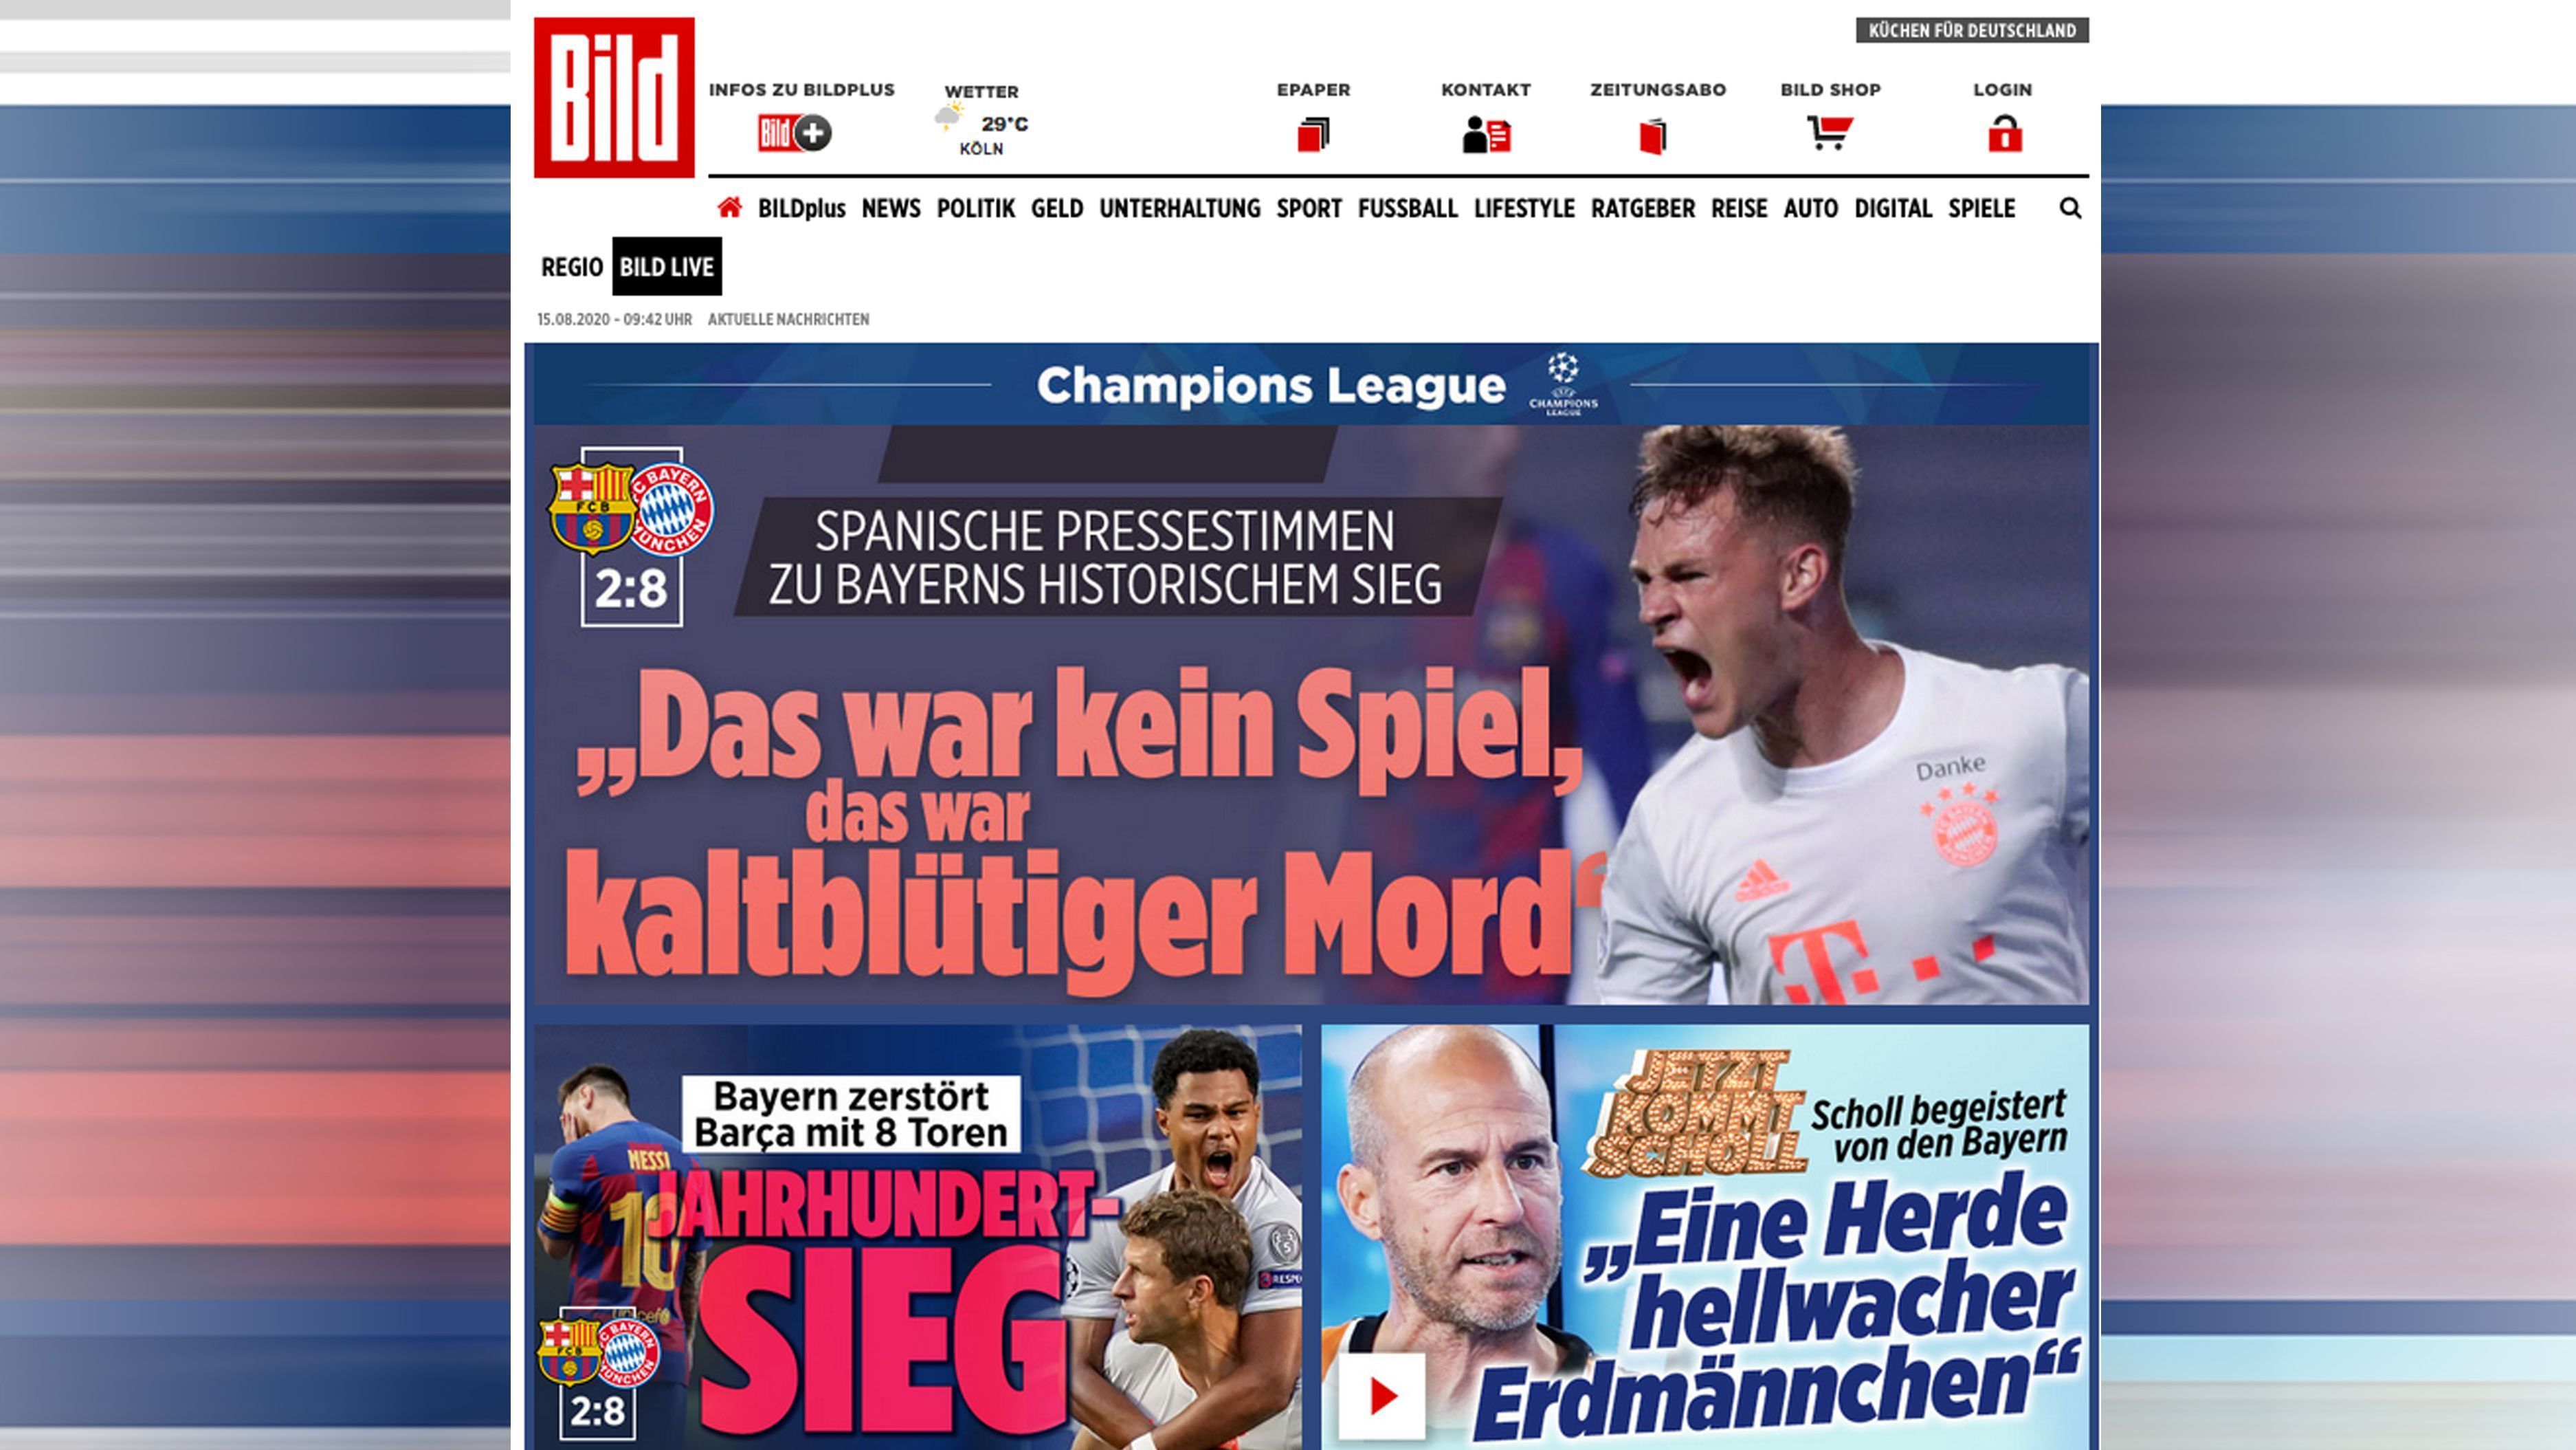 
                <strong>Deutschland</strong><br>
                Bild: Jahrhundert-Sieg. Bayern zerstört Barca mit 8 Toren
              